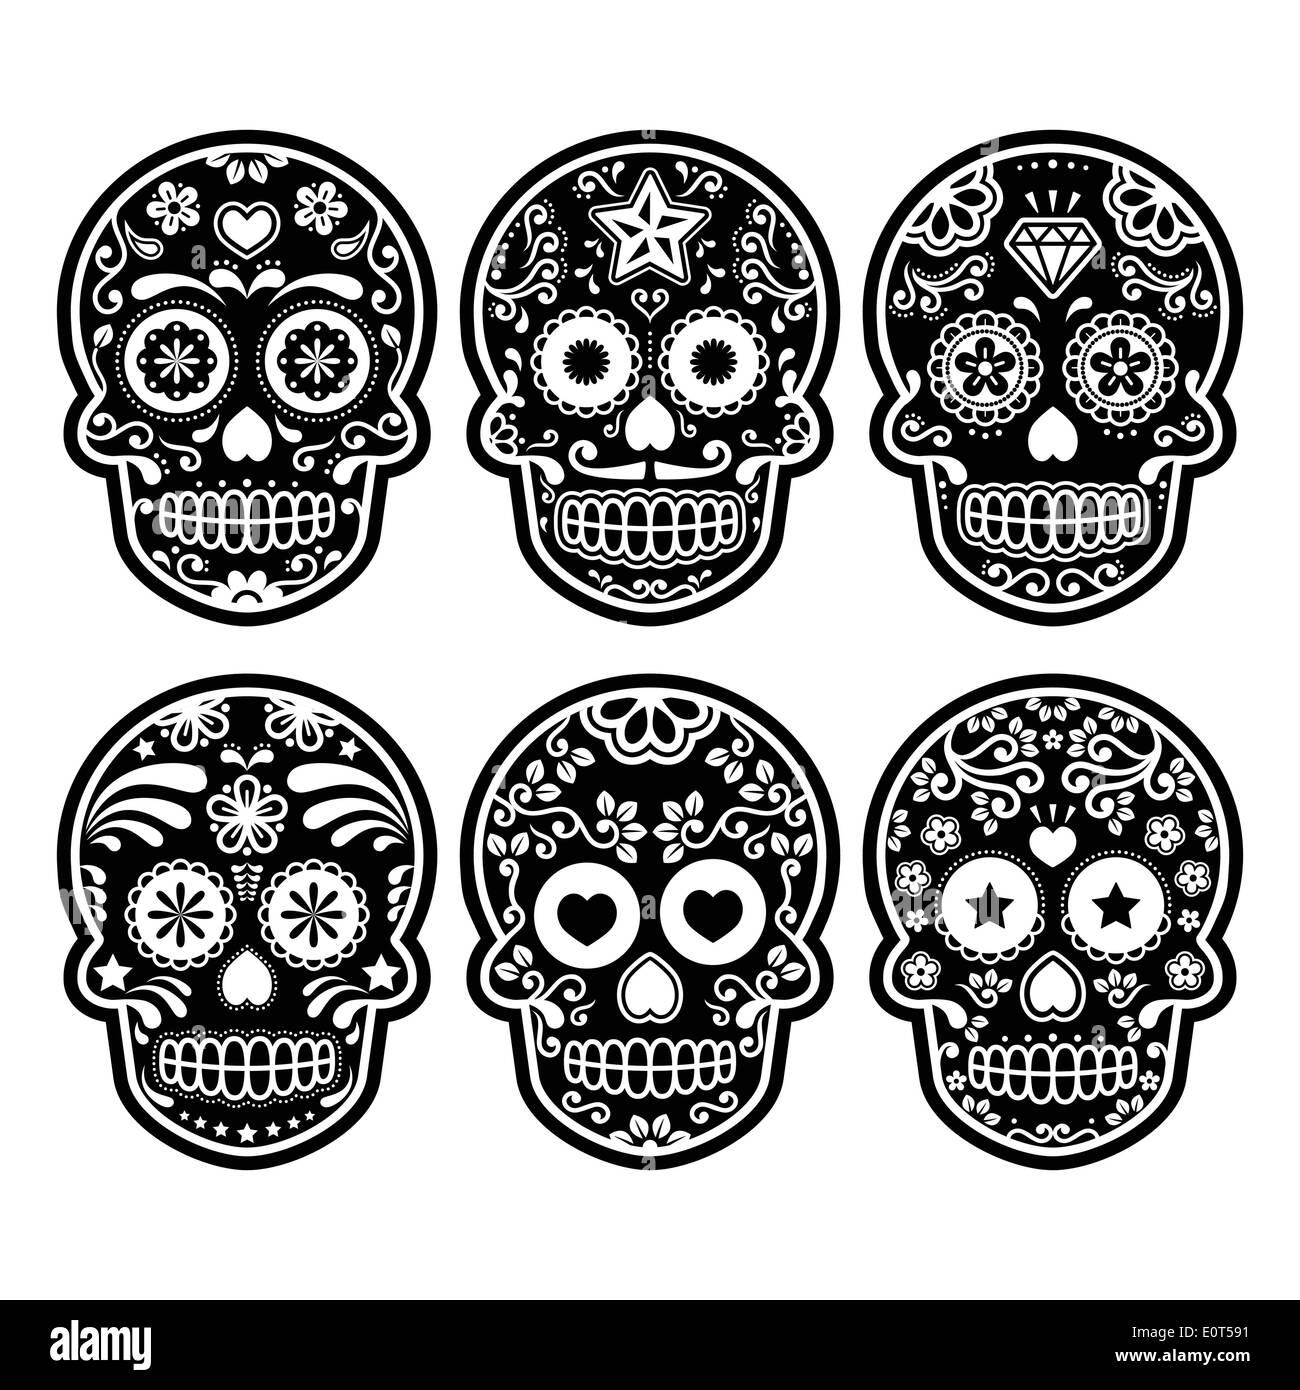 Crâne en sucre mexicain, Dia de los Muertos colorful icons set Illustration de Vecteur